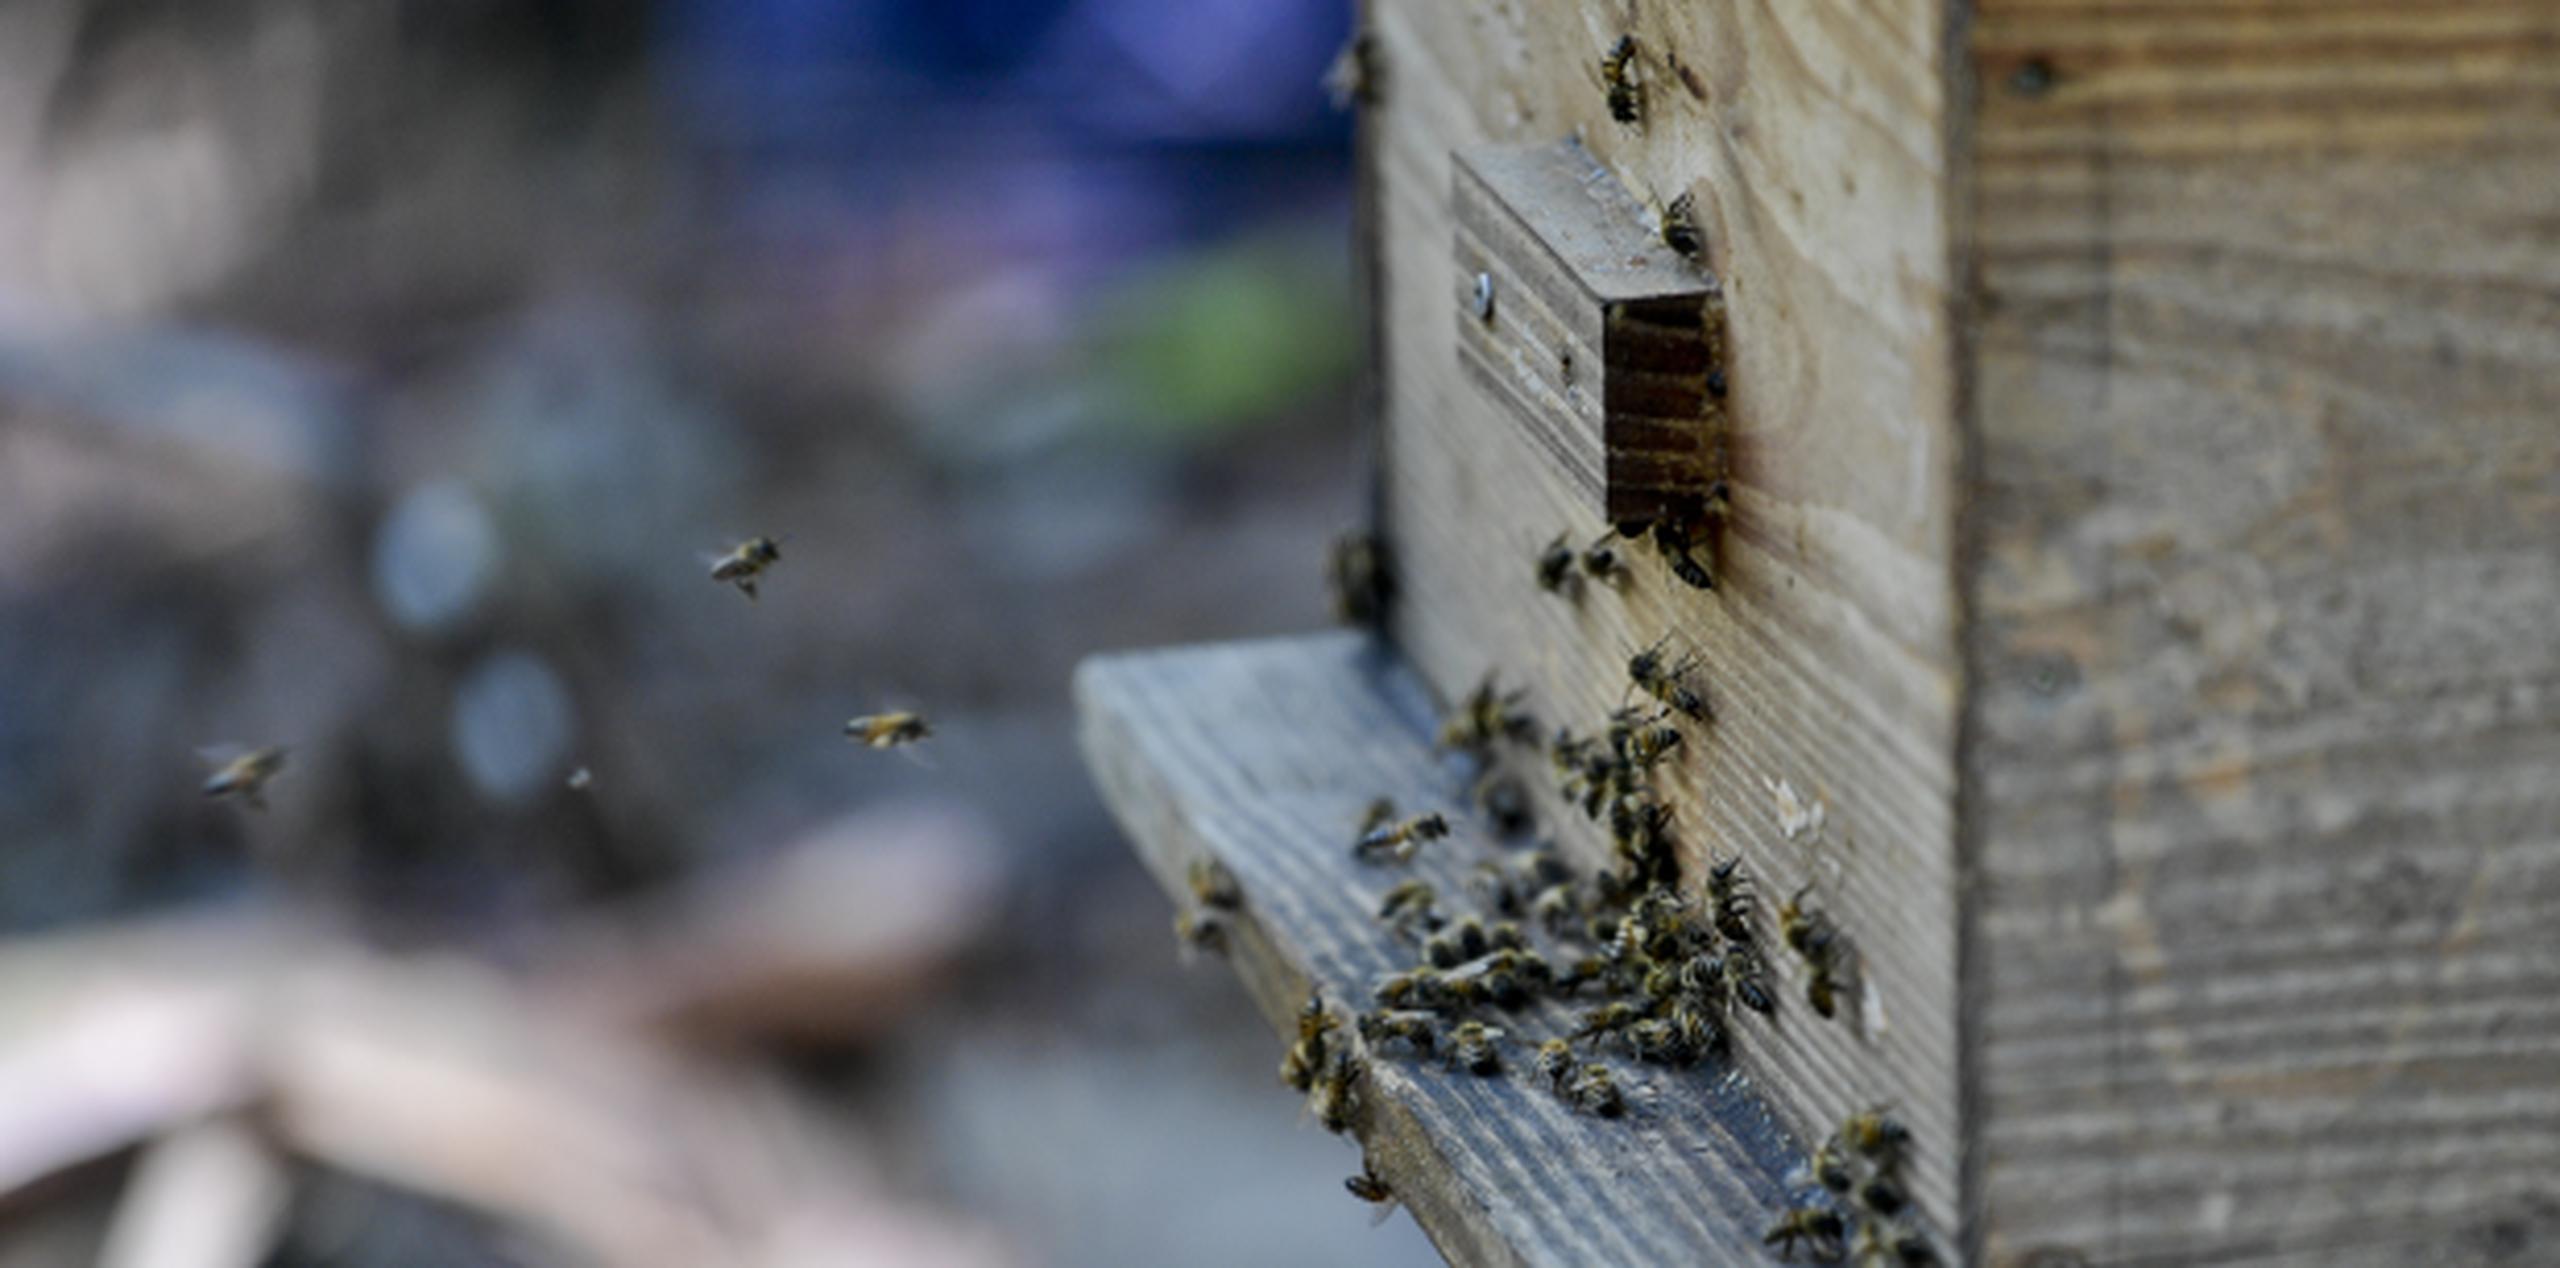 Al lugar han llevado abejas removidas de varios pueblos de la Isla que han ubicado en diez colmenas. (gerald.lopez@gfrmedia.com)